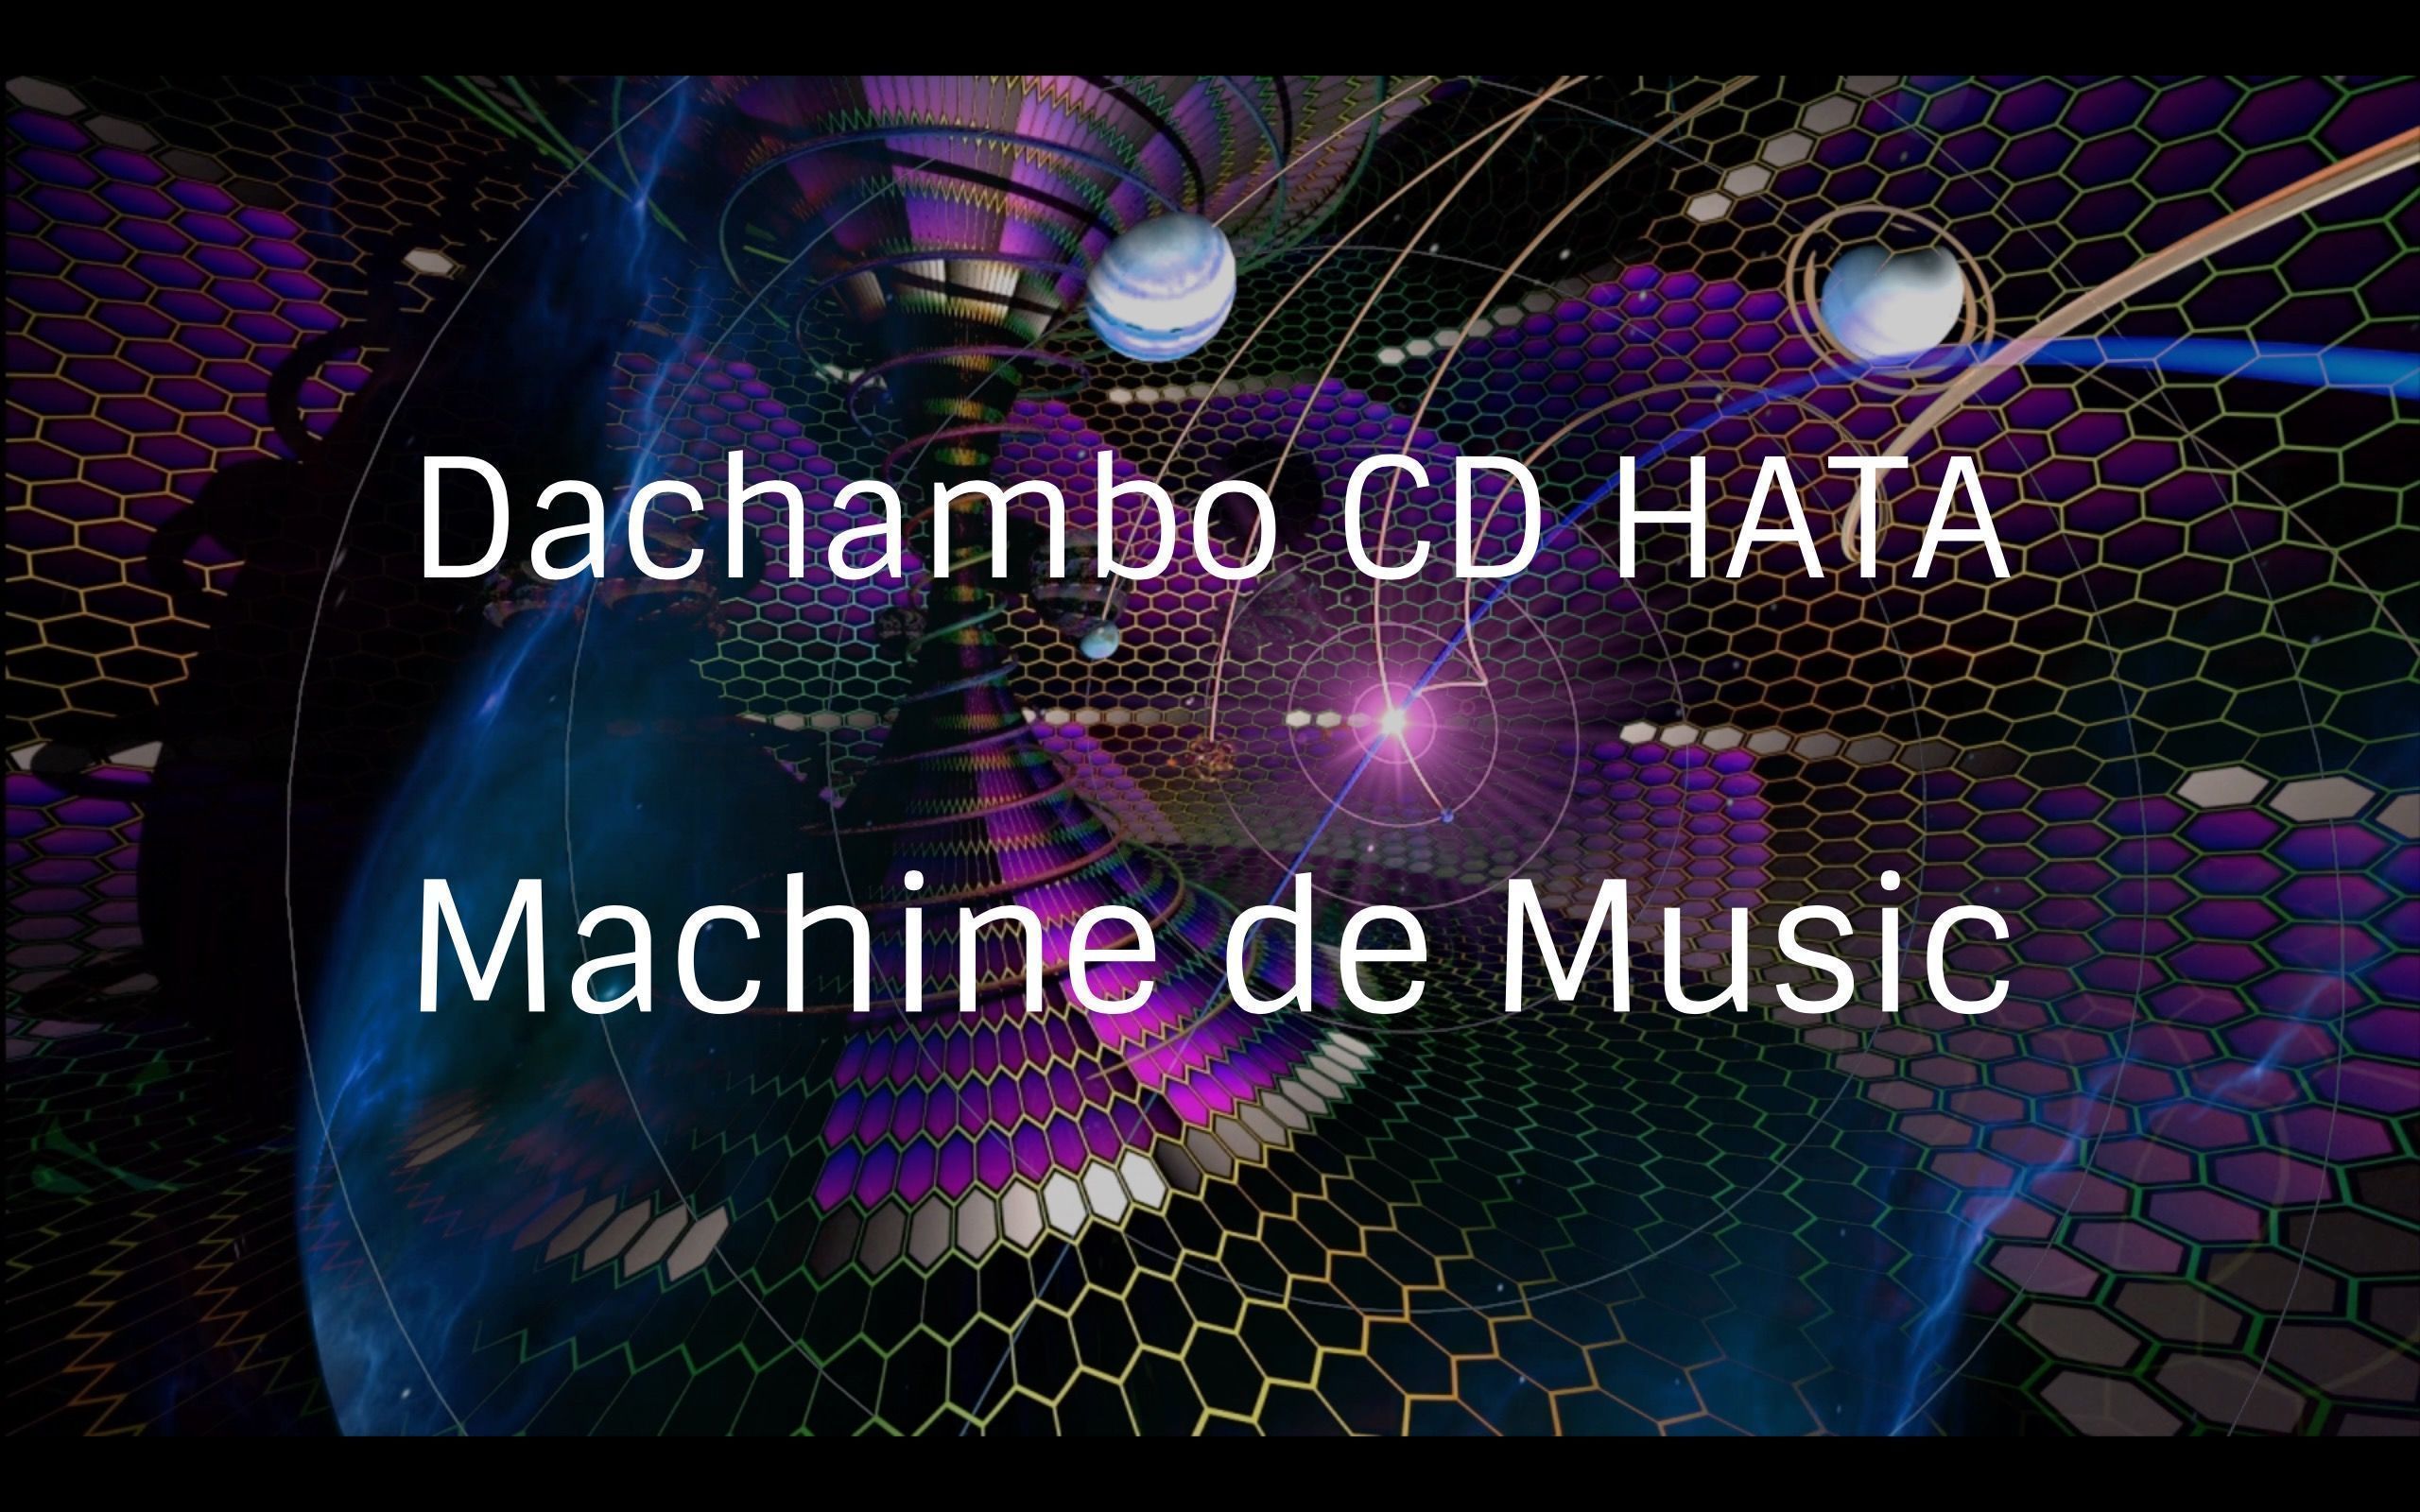 Dachambo CD HATAのMachine de Music コラムVol.64 東京ペダルサミットに行ってきました!!

